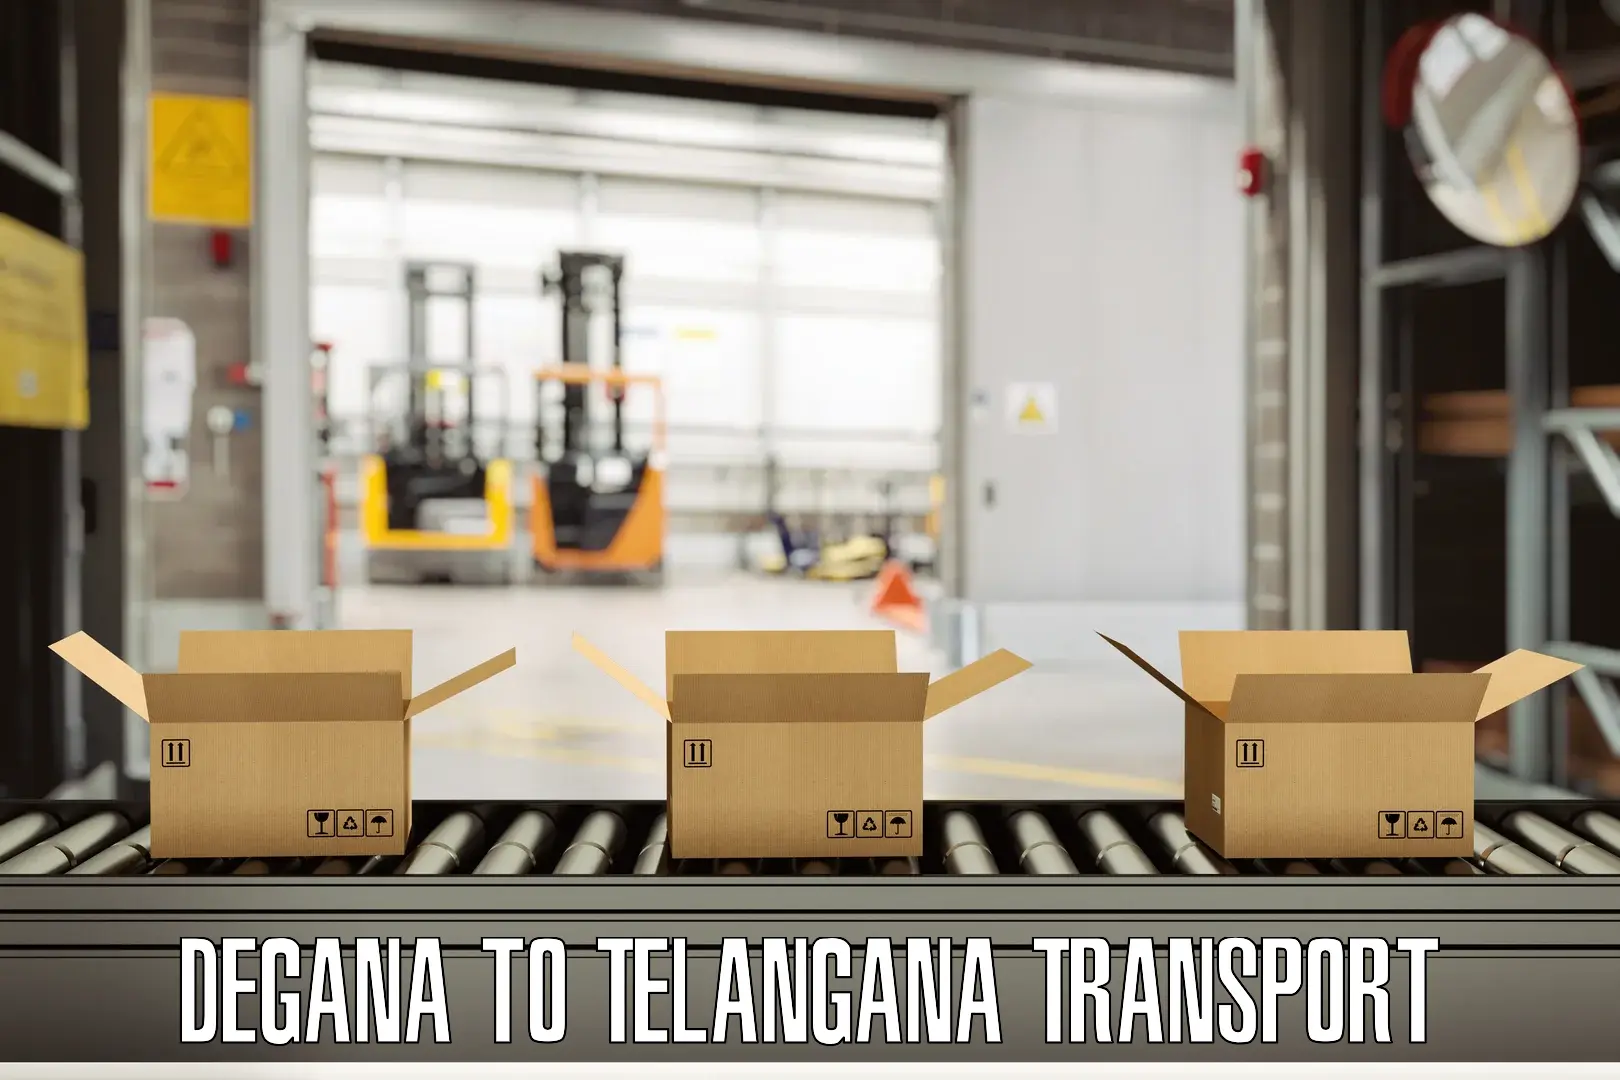 Container transport service in Degana to Nellikuduru